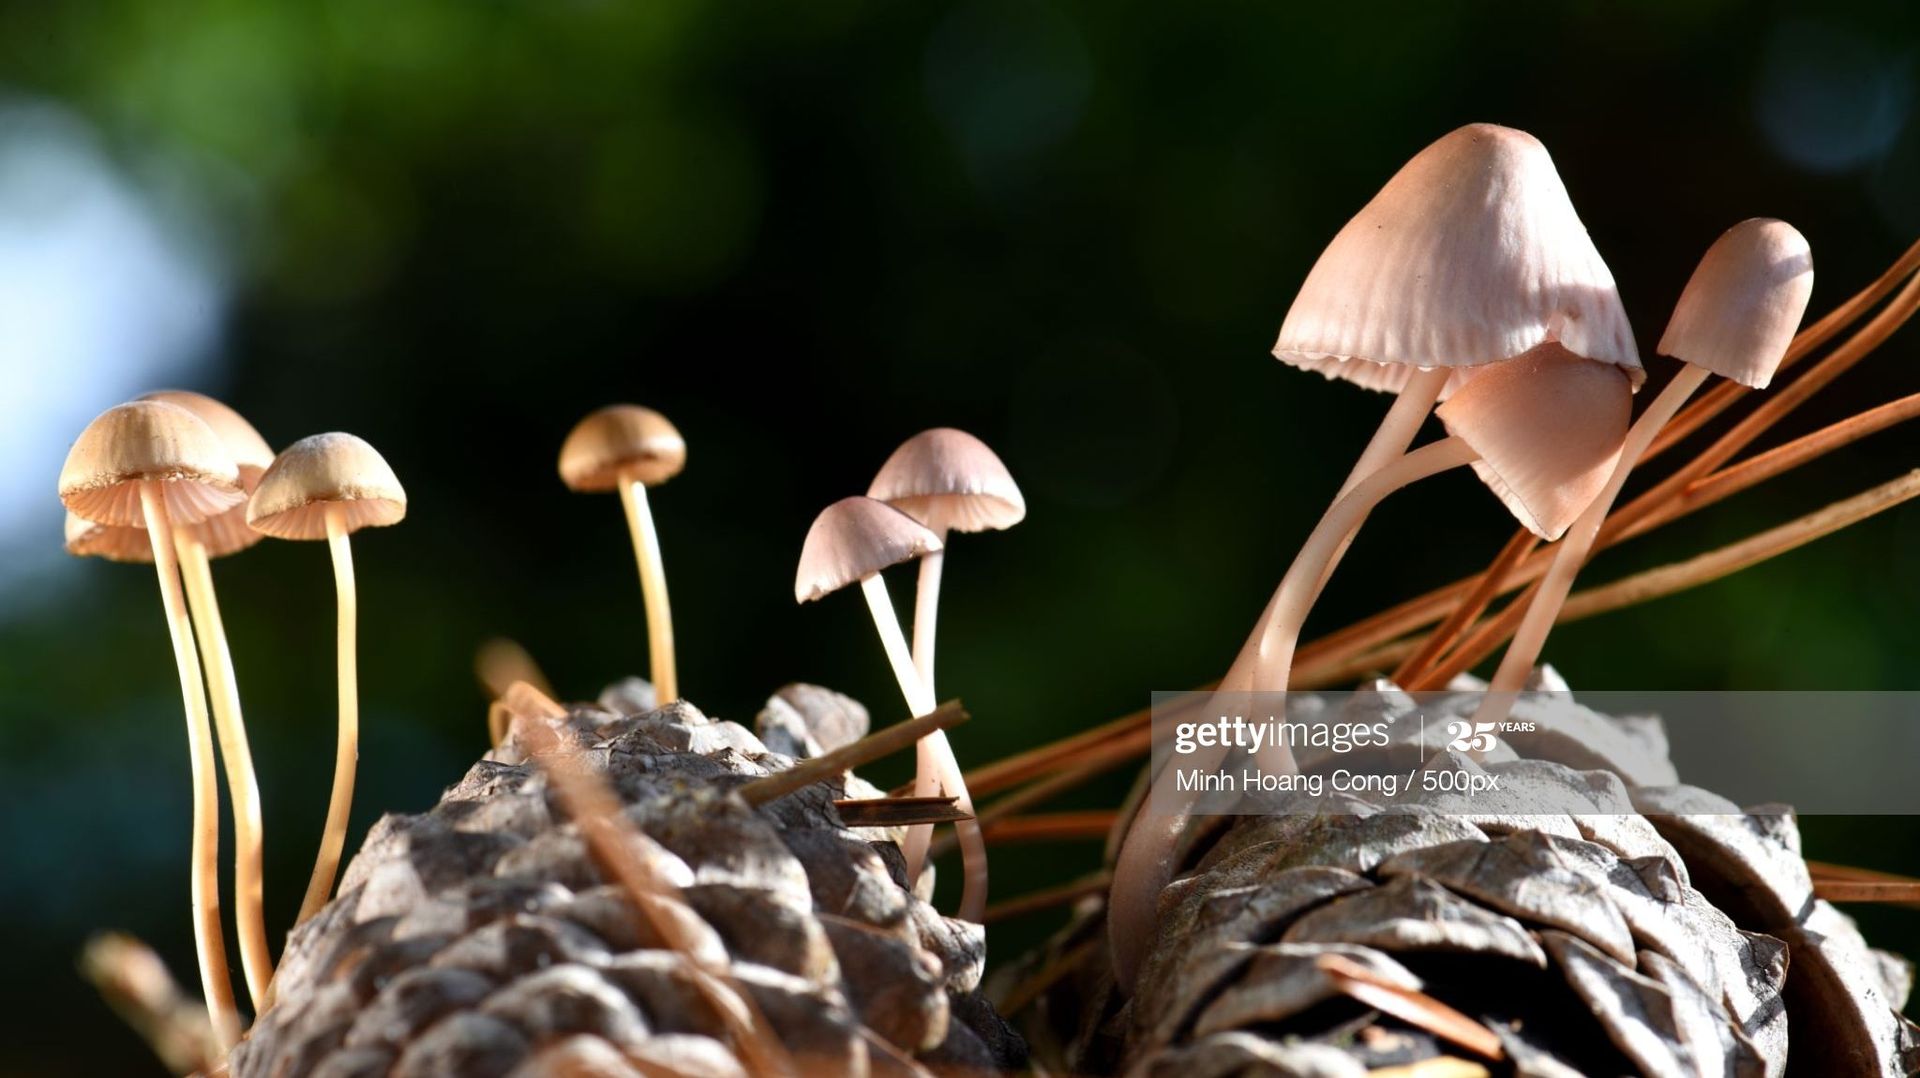 Le rôle primordial du champignon dans le monde végétal